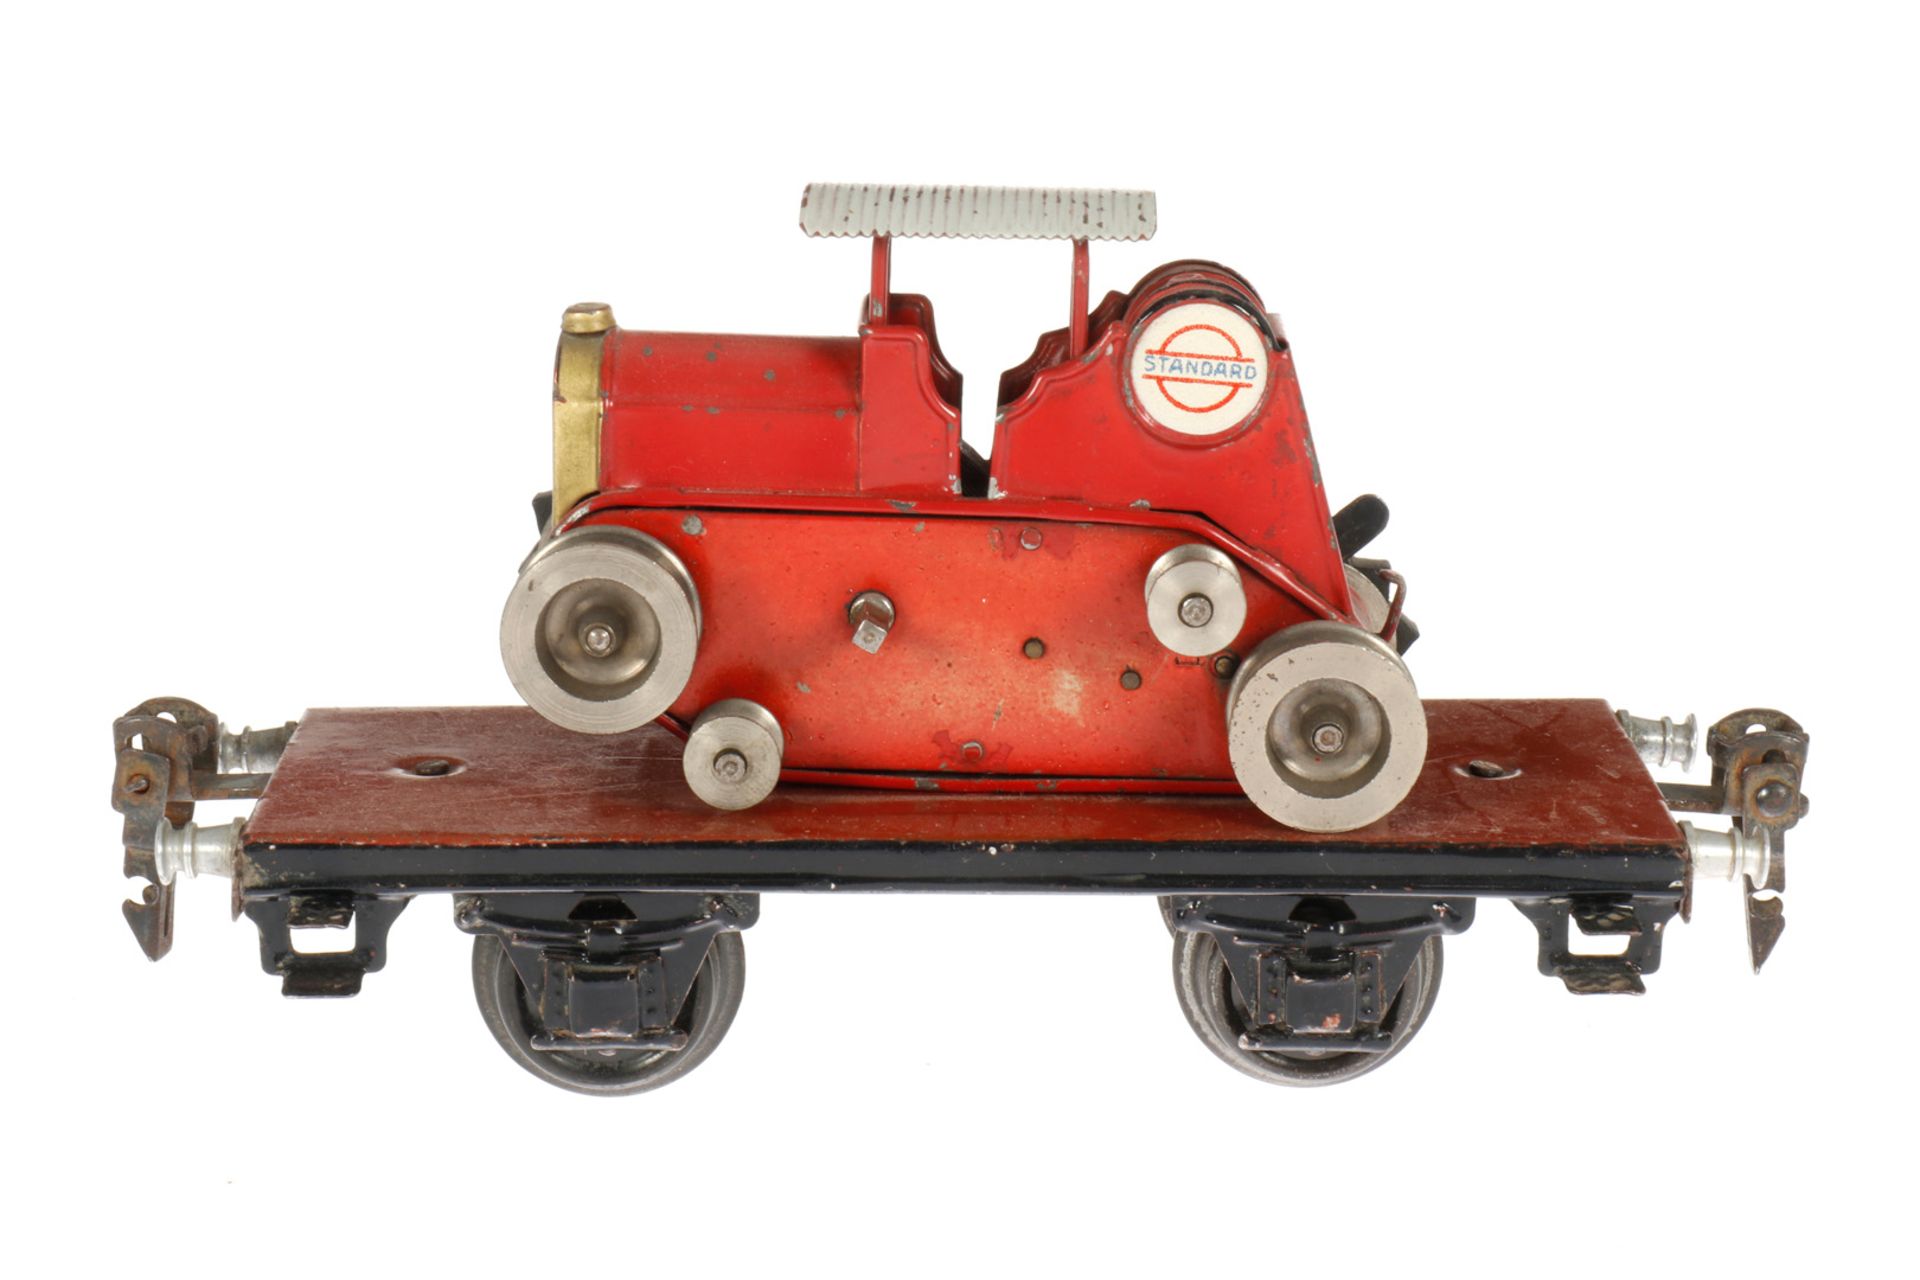 Märklin Plattformwagen mit Raupenschlepper 1709, S 0, handlackiert, Uhrwerk intakt, eine